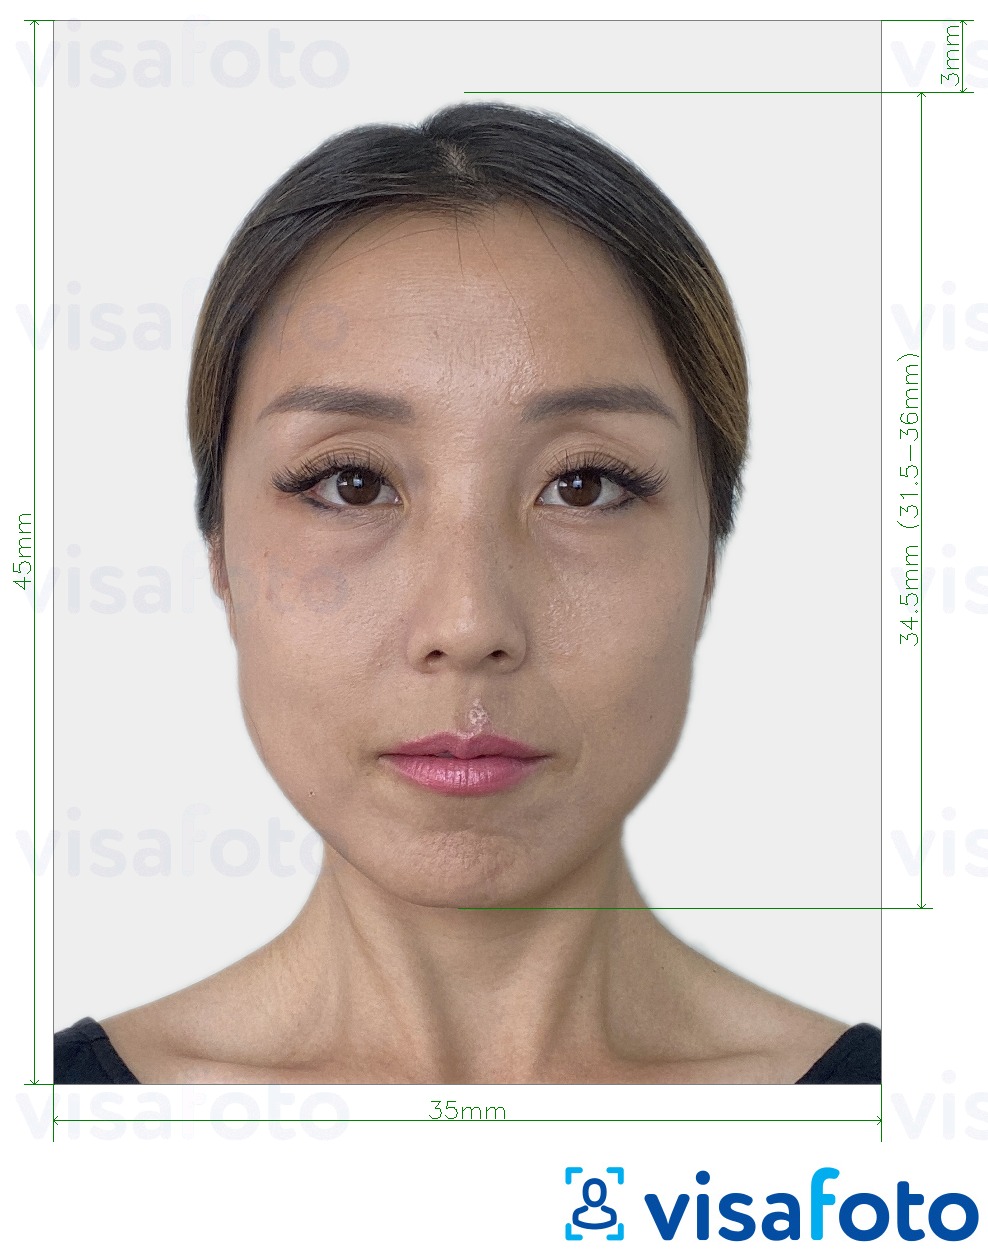 Contoh dari foto untuk Visa Jepang 35x45 mm dengan ukuran spesifikasi yang tepat